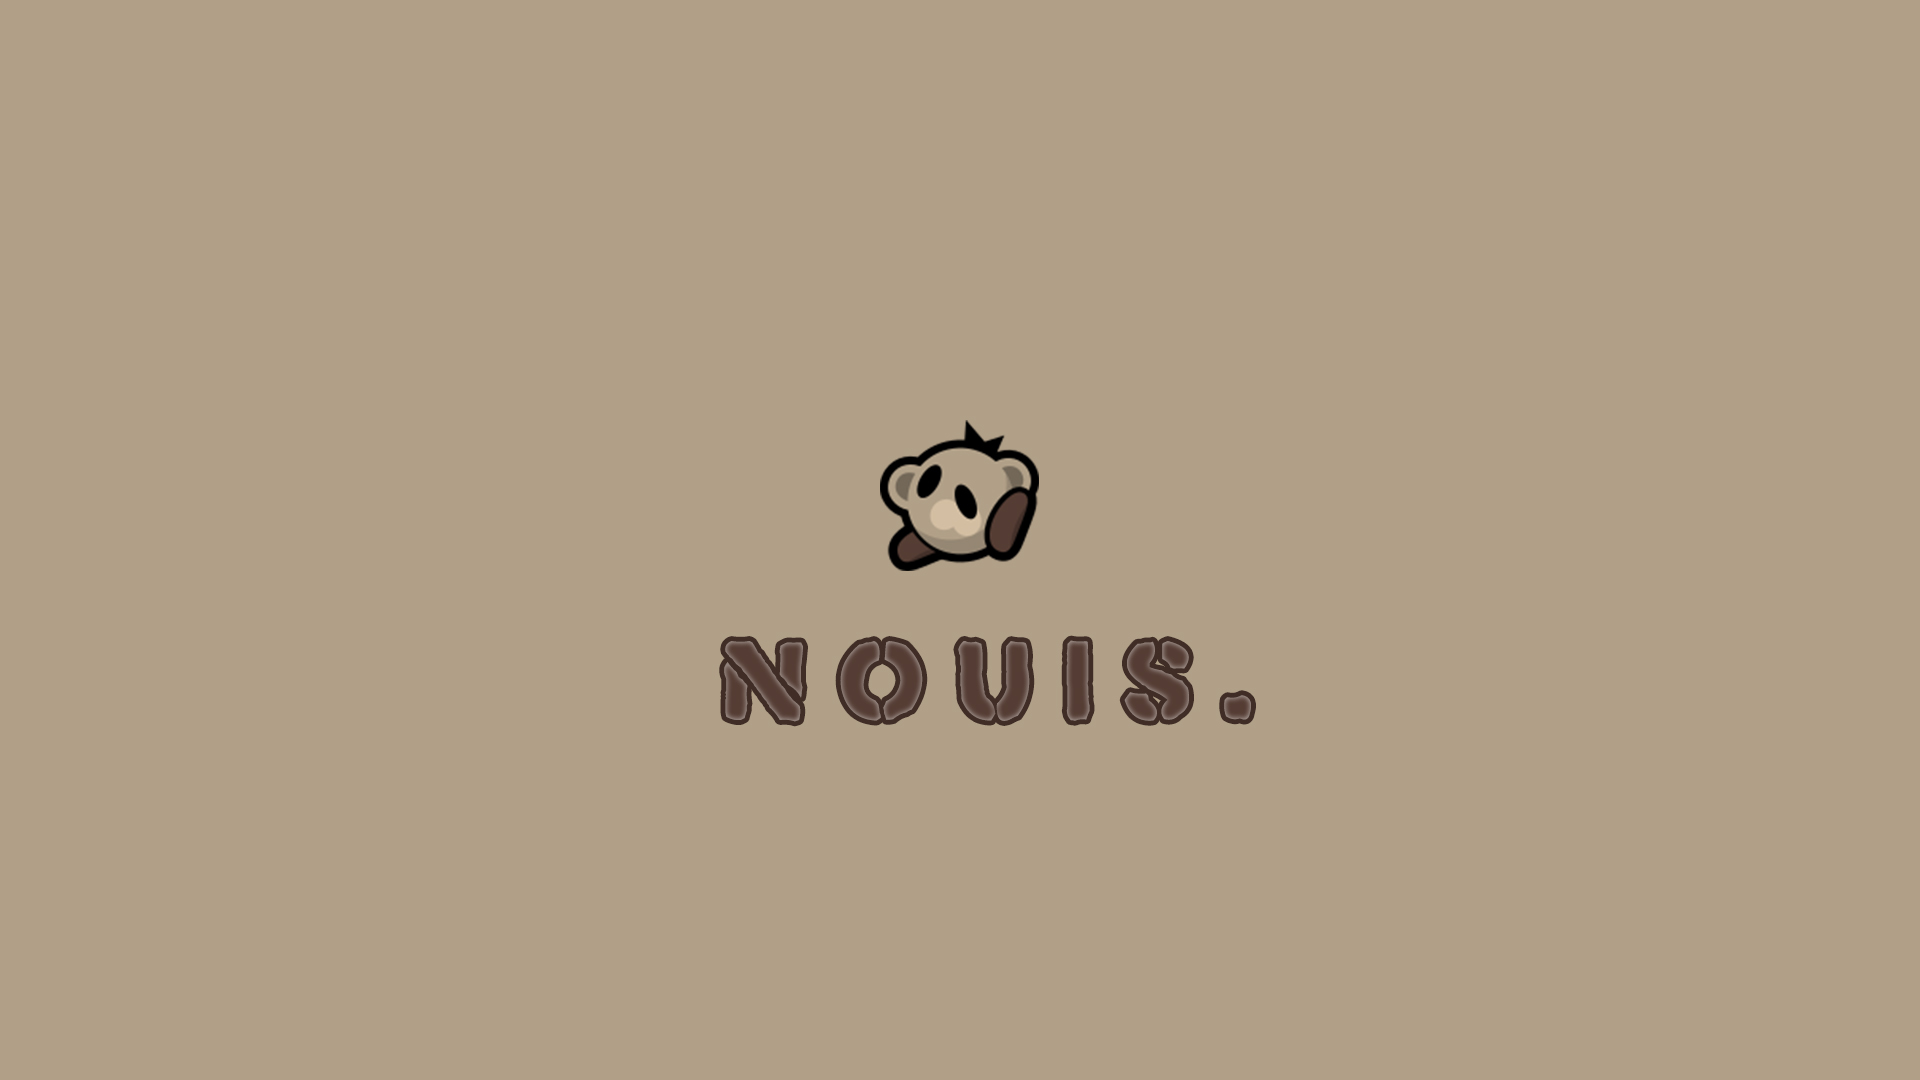 nouis_wallpaper-C6177.jpg